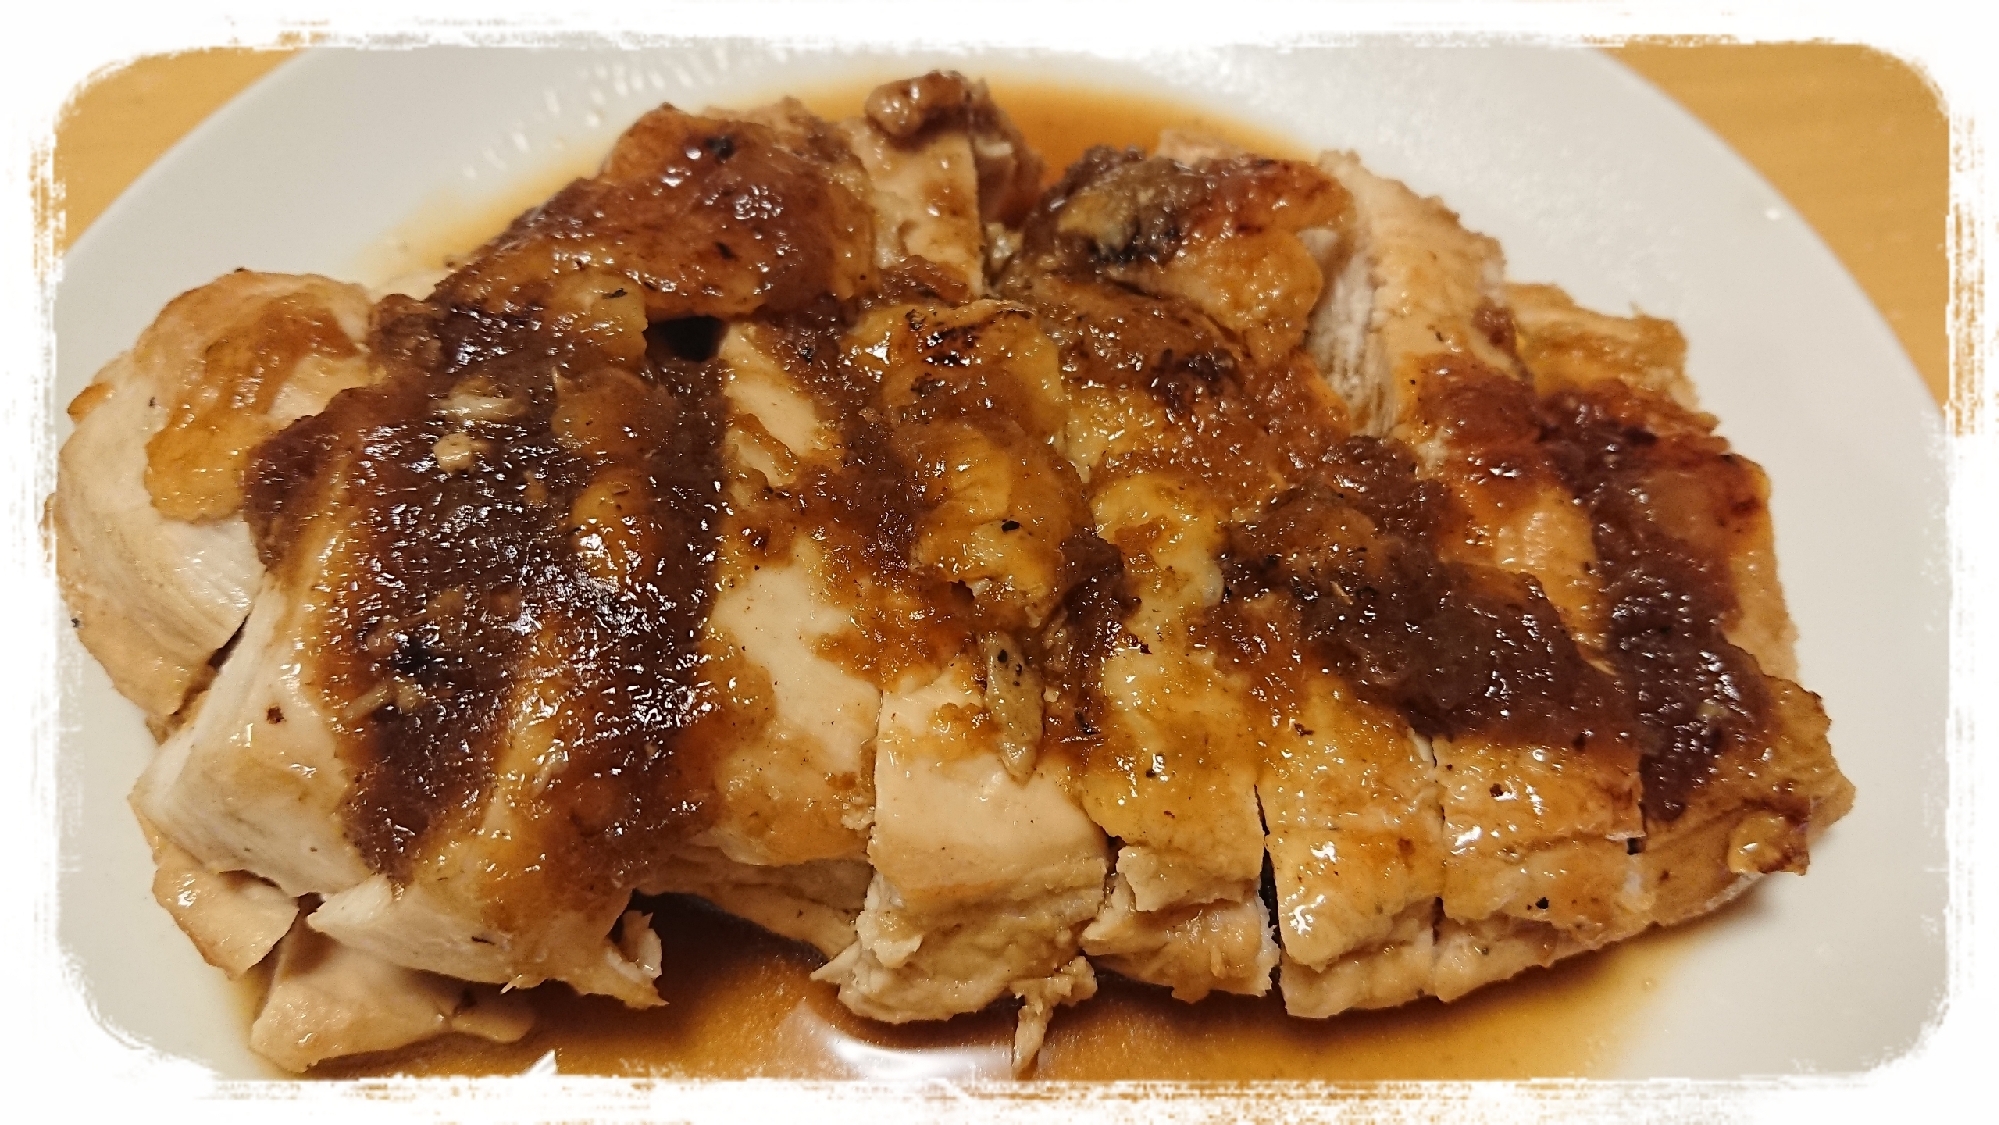 鶏むね肉のチキンステーキ☆オニオンソース